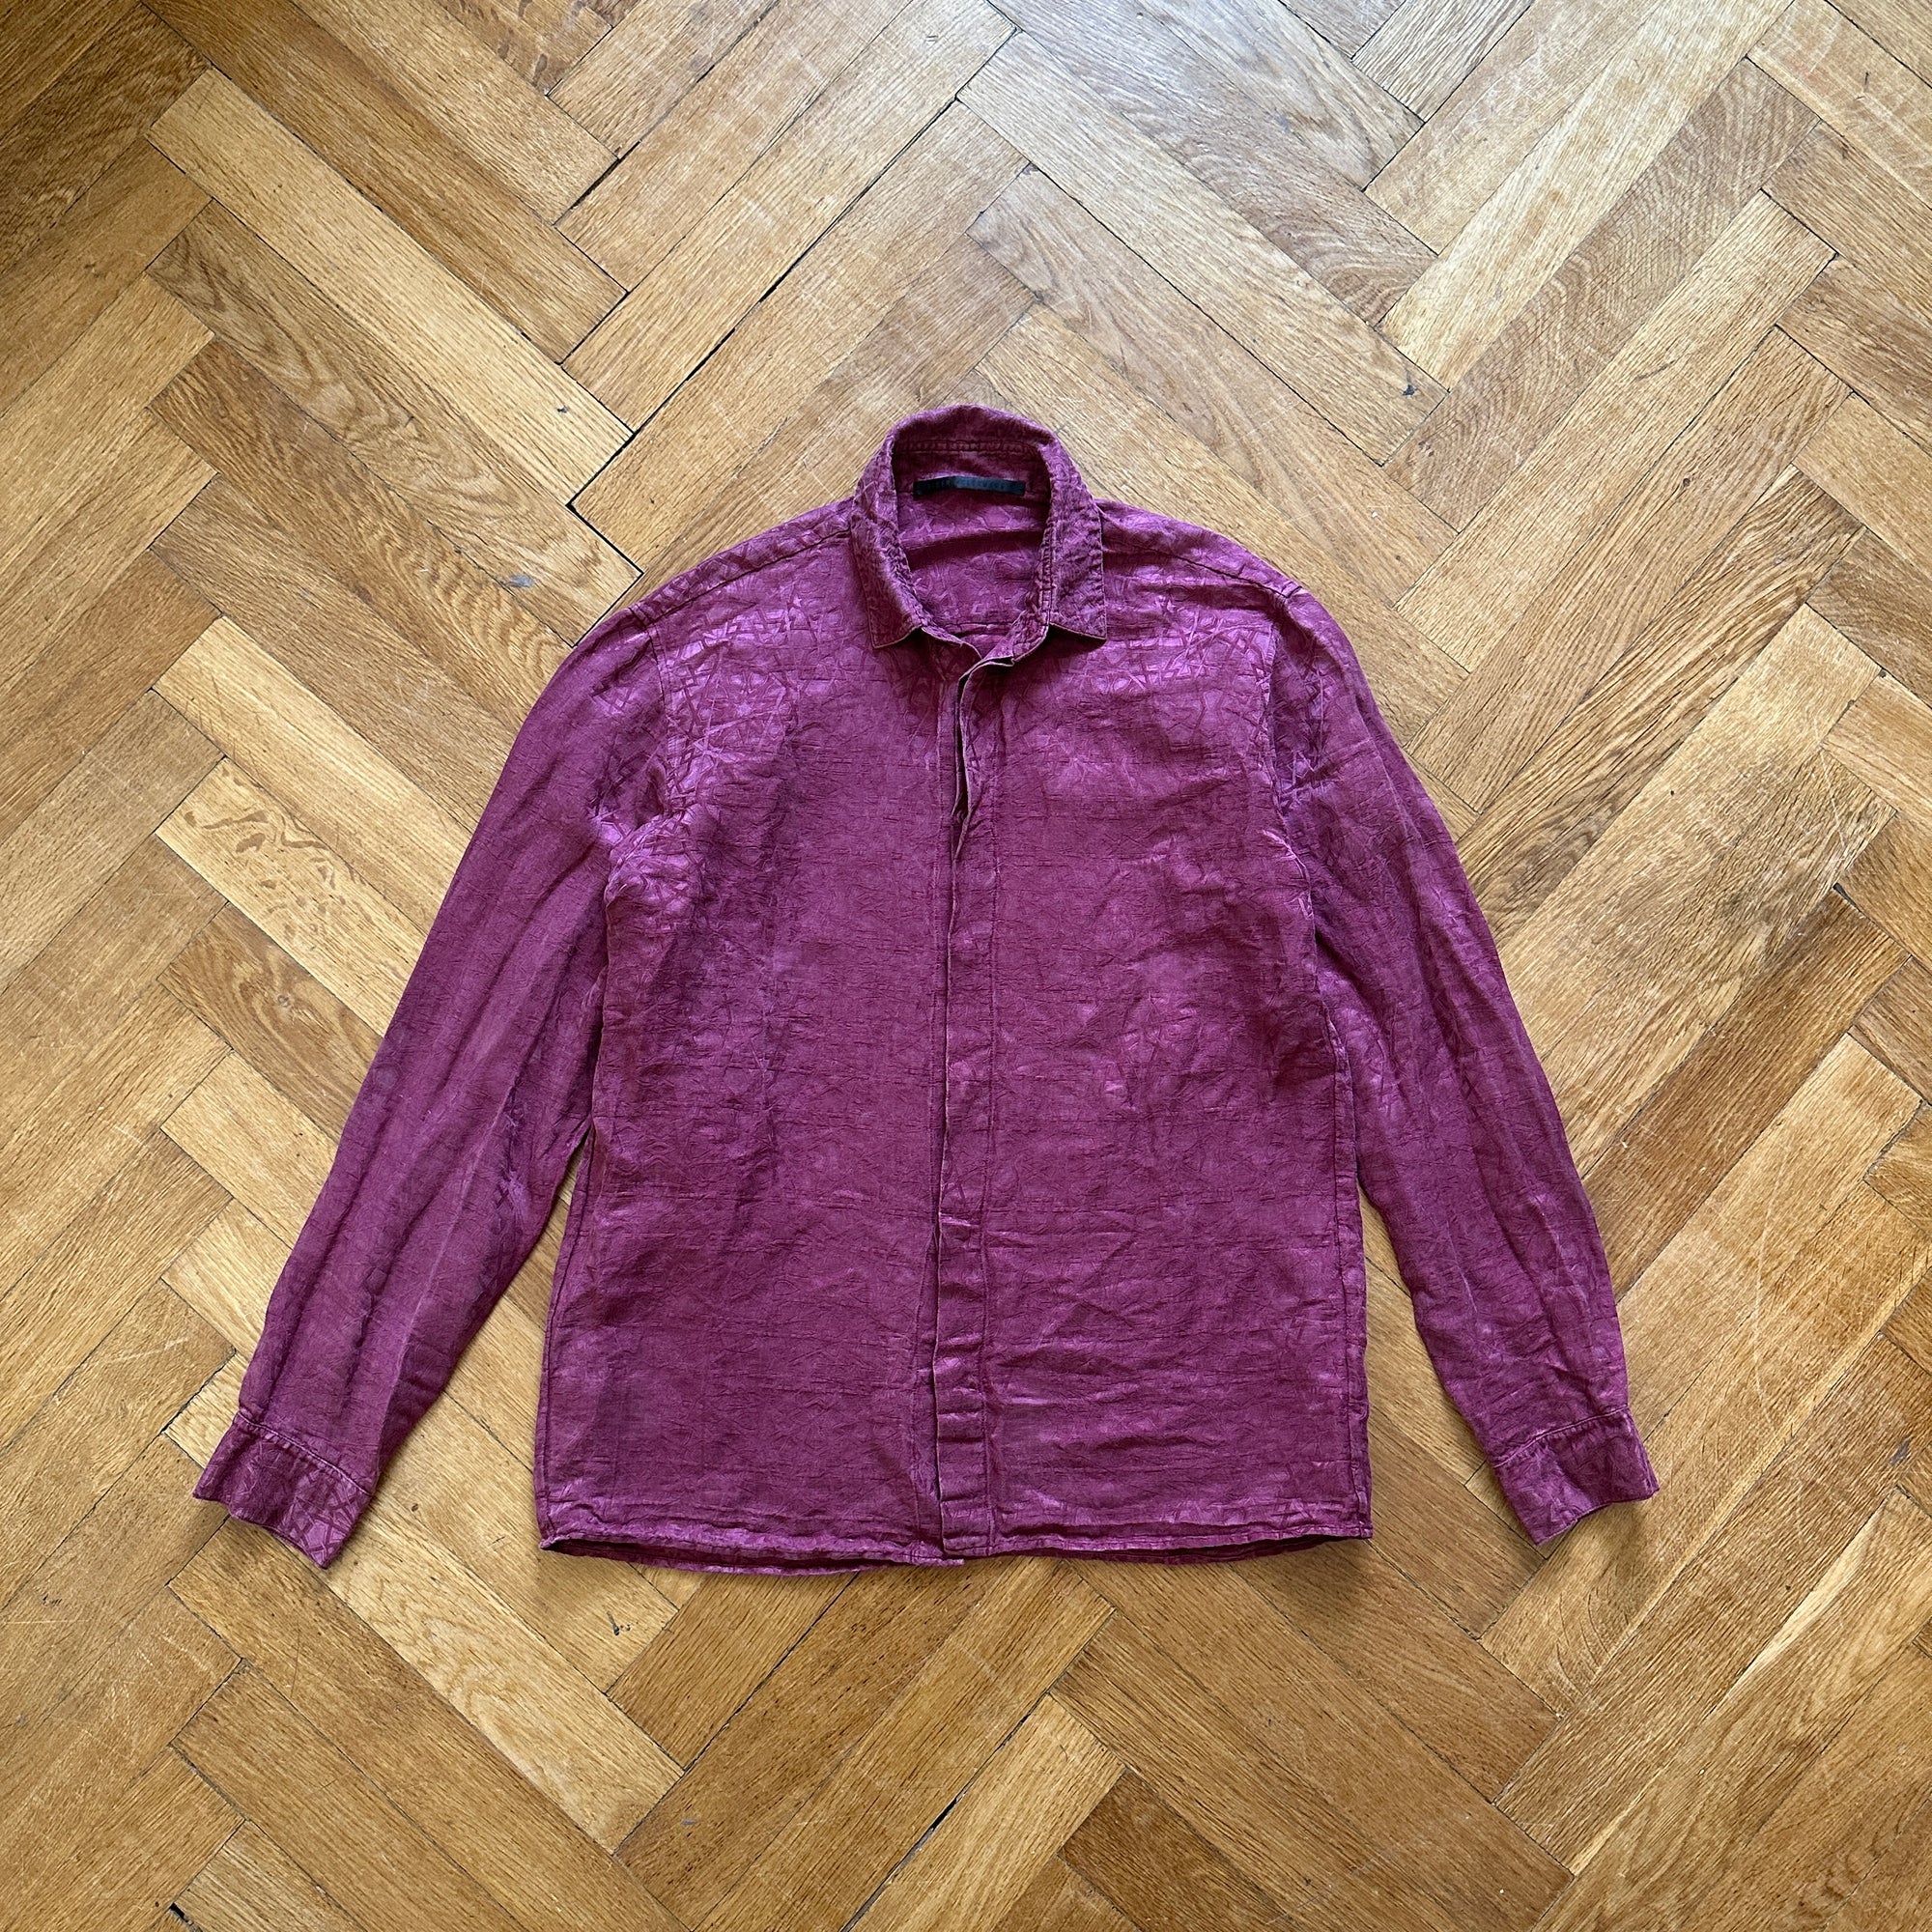 Haider Ackermann Geometric Print Silk Blend Shirt